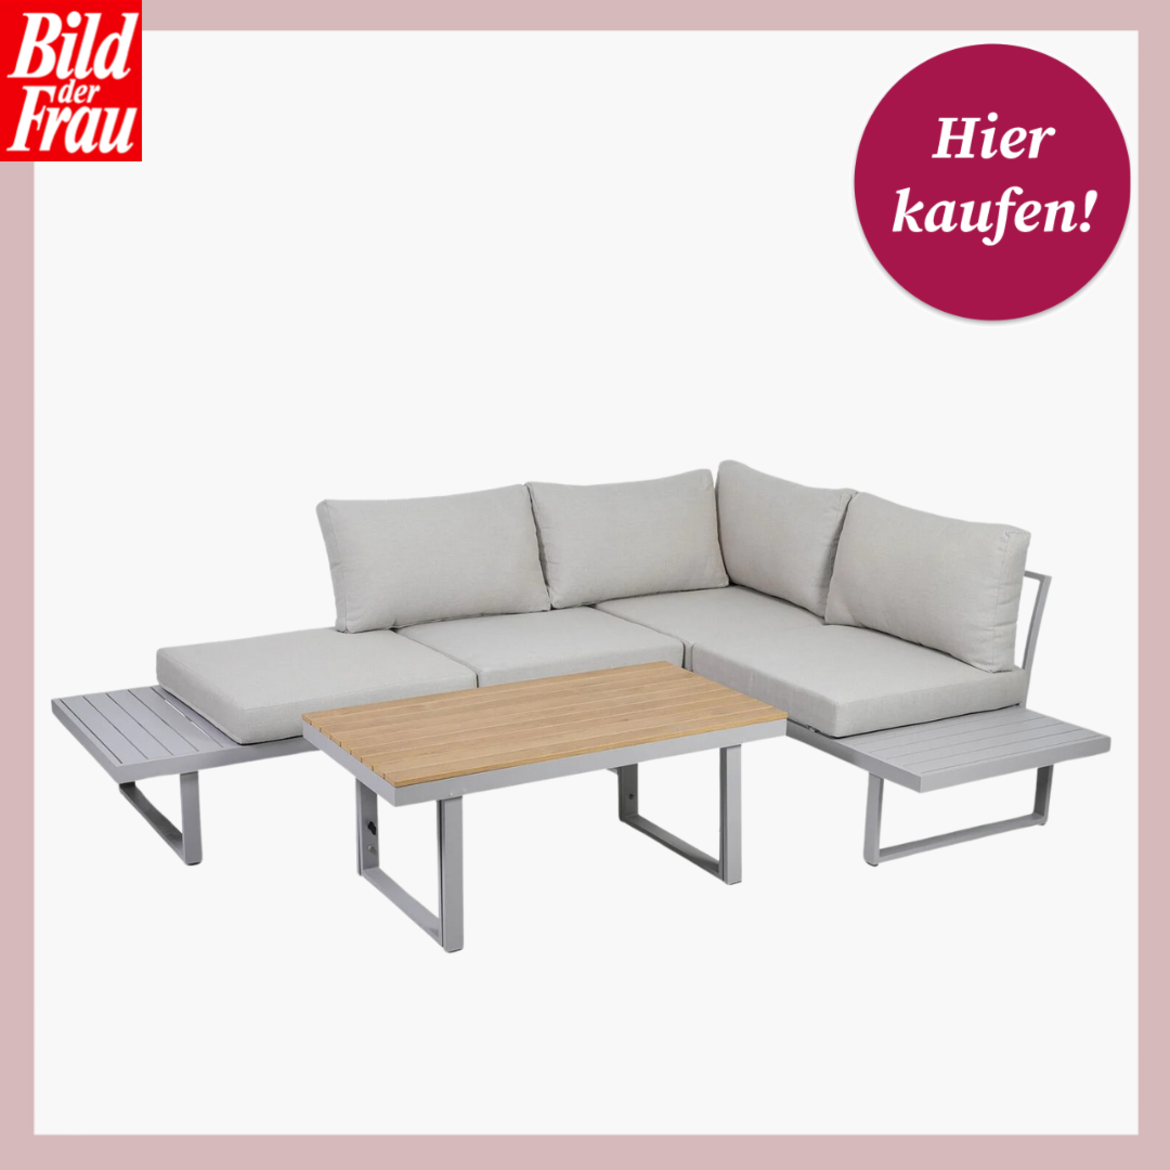 Eckiges Lounge-Gartenmöbelset in Grau mit weichen Kissen und integriertem Tisch. | © Lidl 